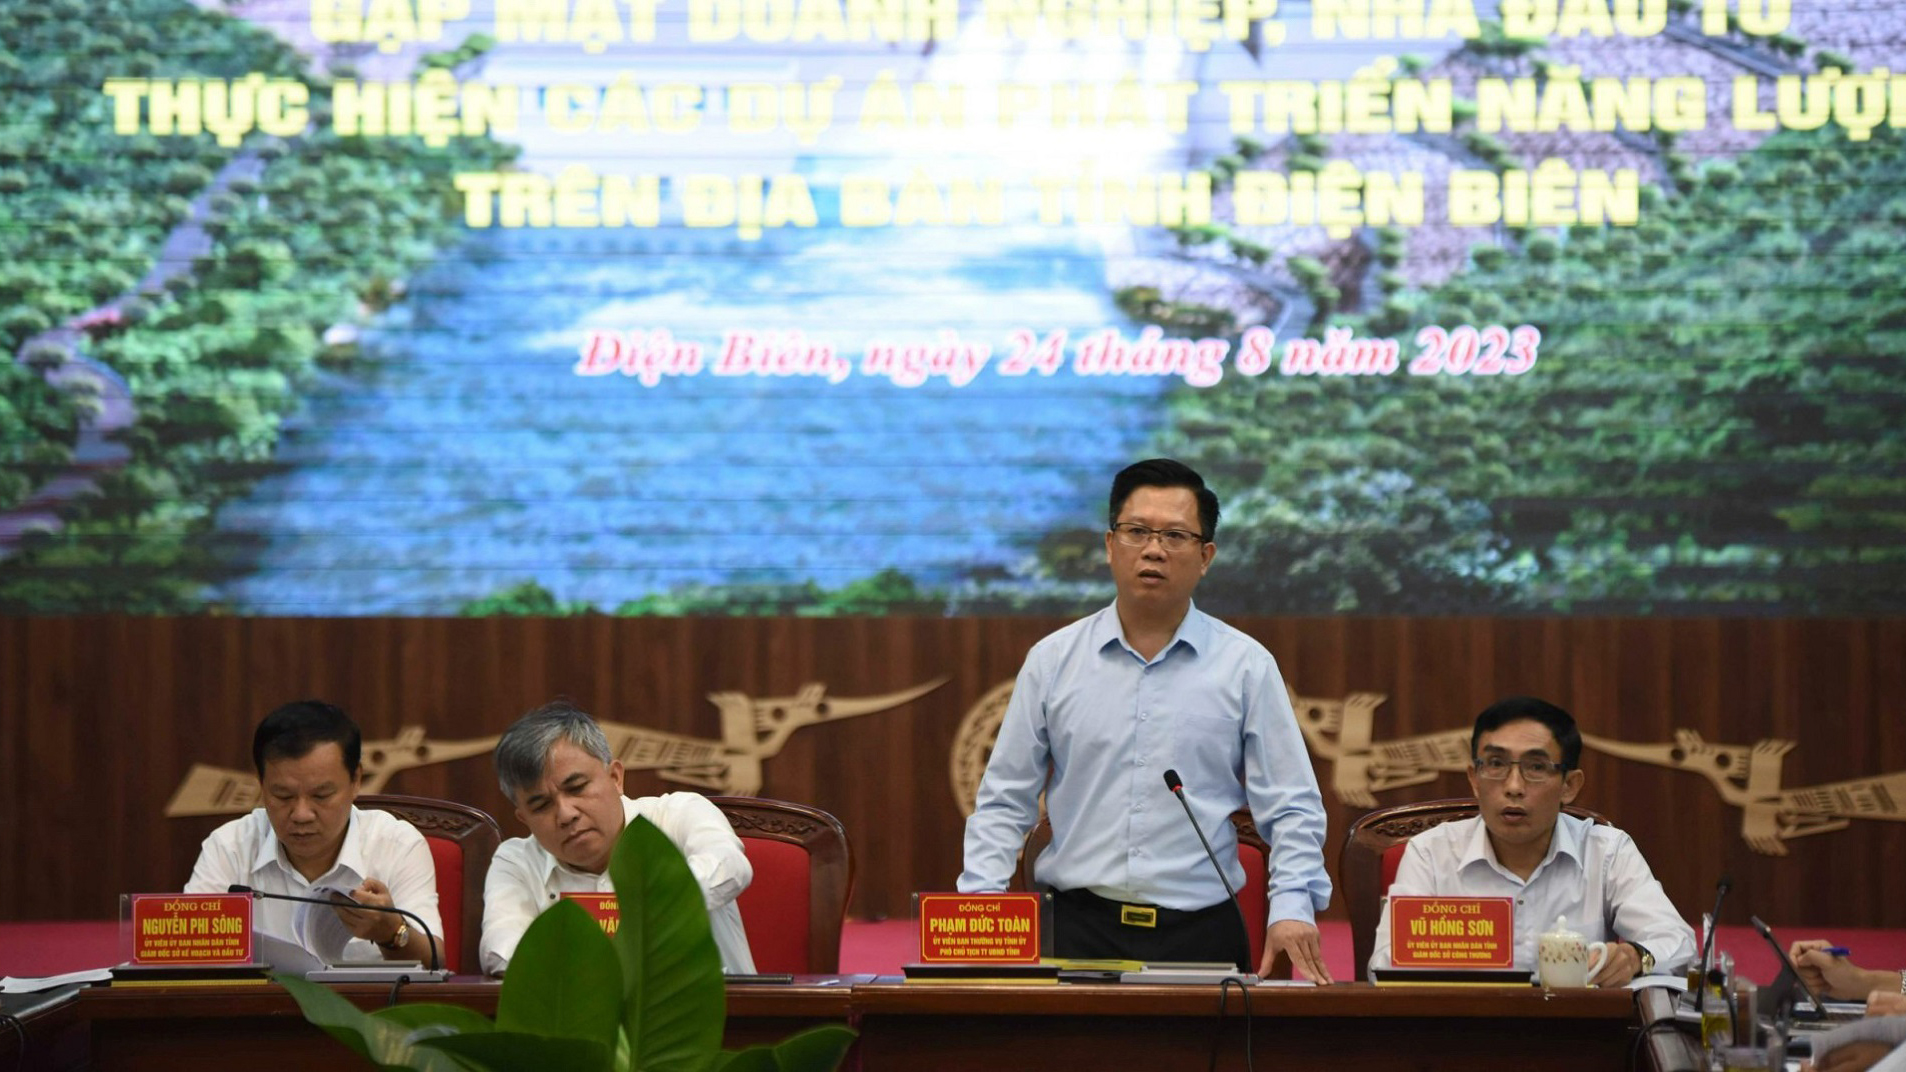 Đồng chí Phạm Đức Toàn, Phó Chủ tịch Thường trực Ủy ban nhân dân tỉnh Điện Biên yêu cầu lãnh đạo các sở, ngành chỉ đạo cán bộ, công chức thực hiện nghiêm đạo đức công vụ.